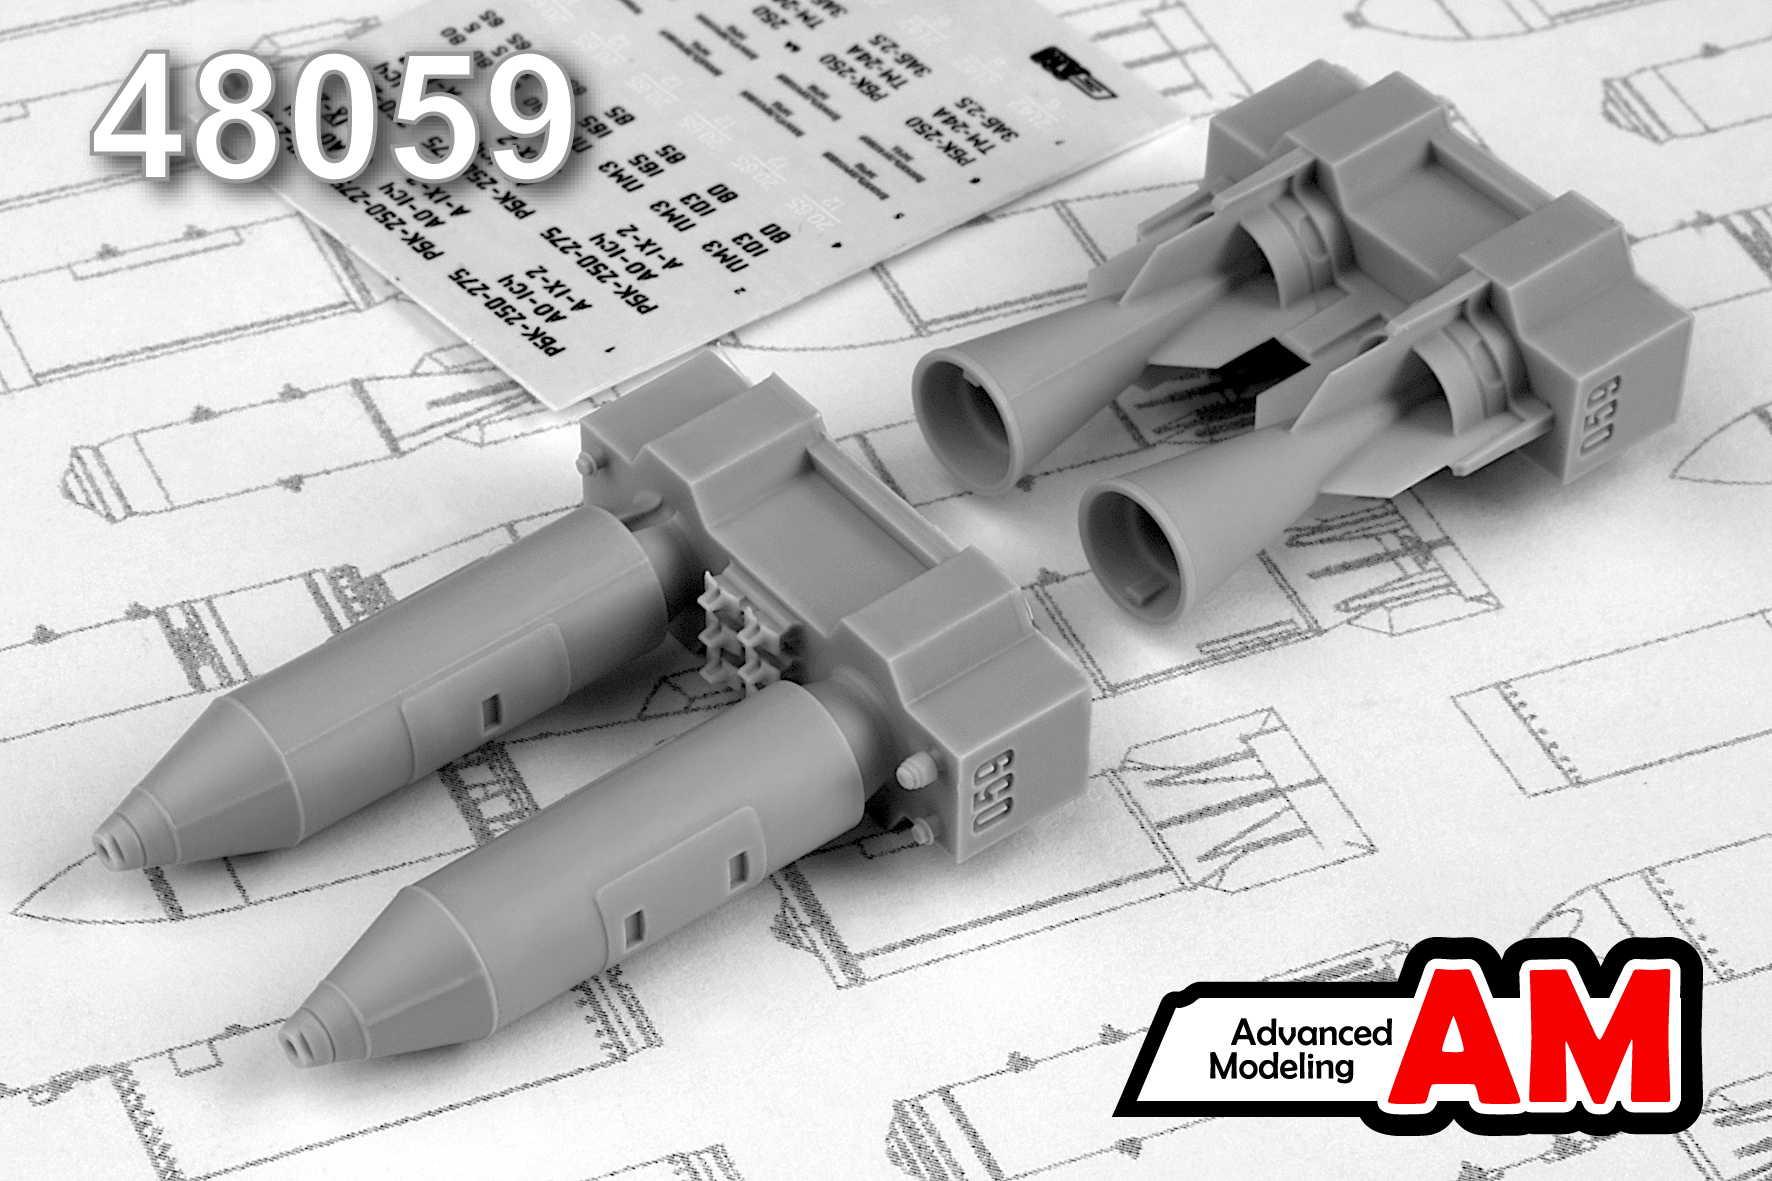 Дополнения из смолы 1/48 РБК-250-275 АО-1 сч разовая бомбовая кассета (Advanced Modeling)